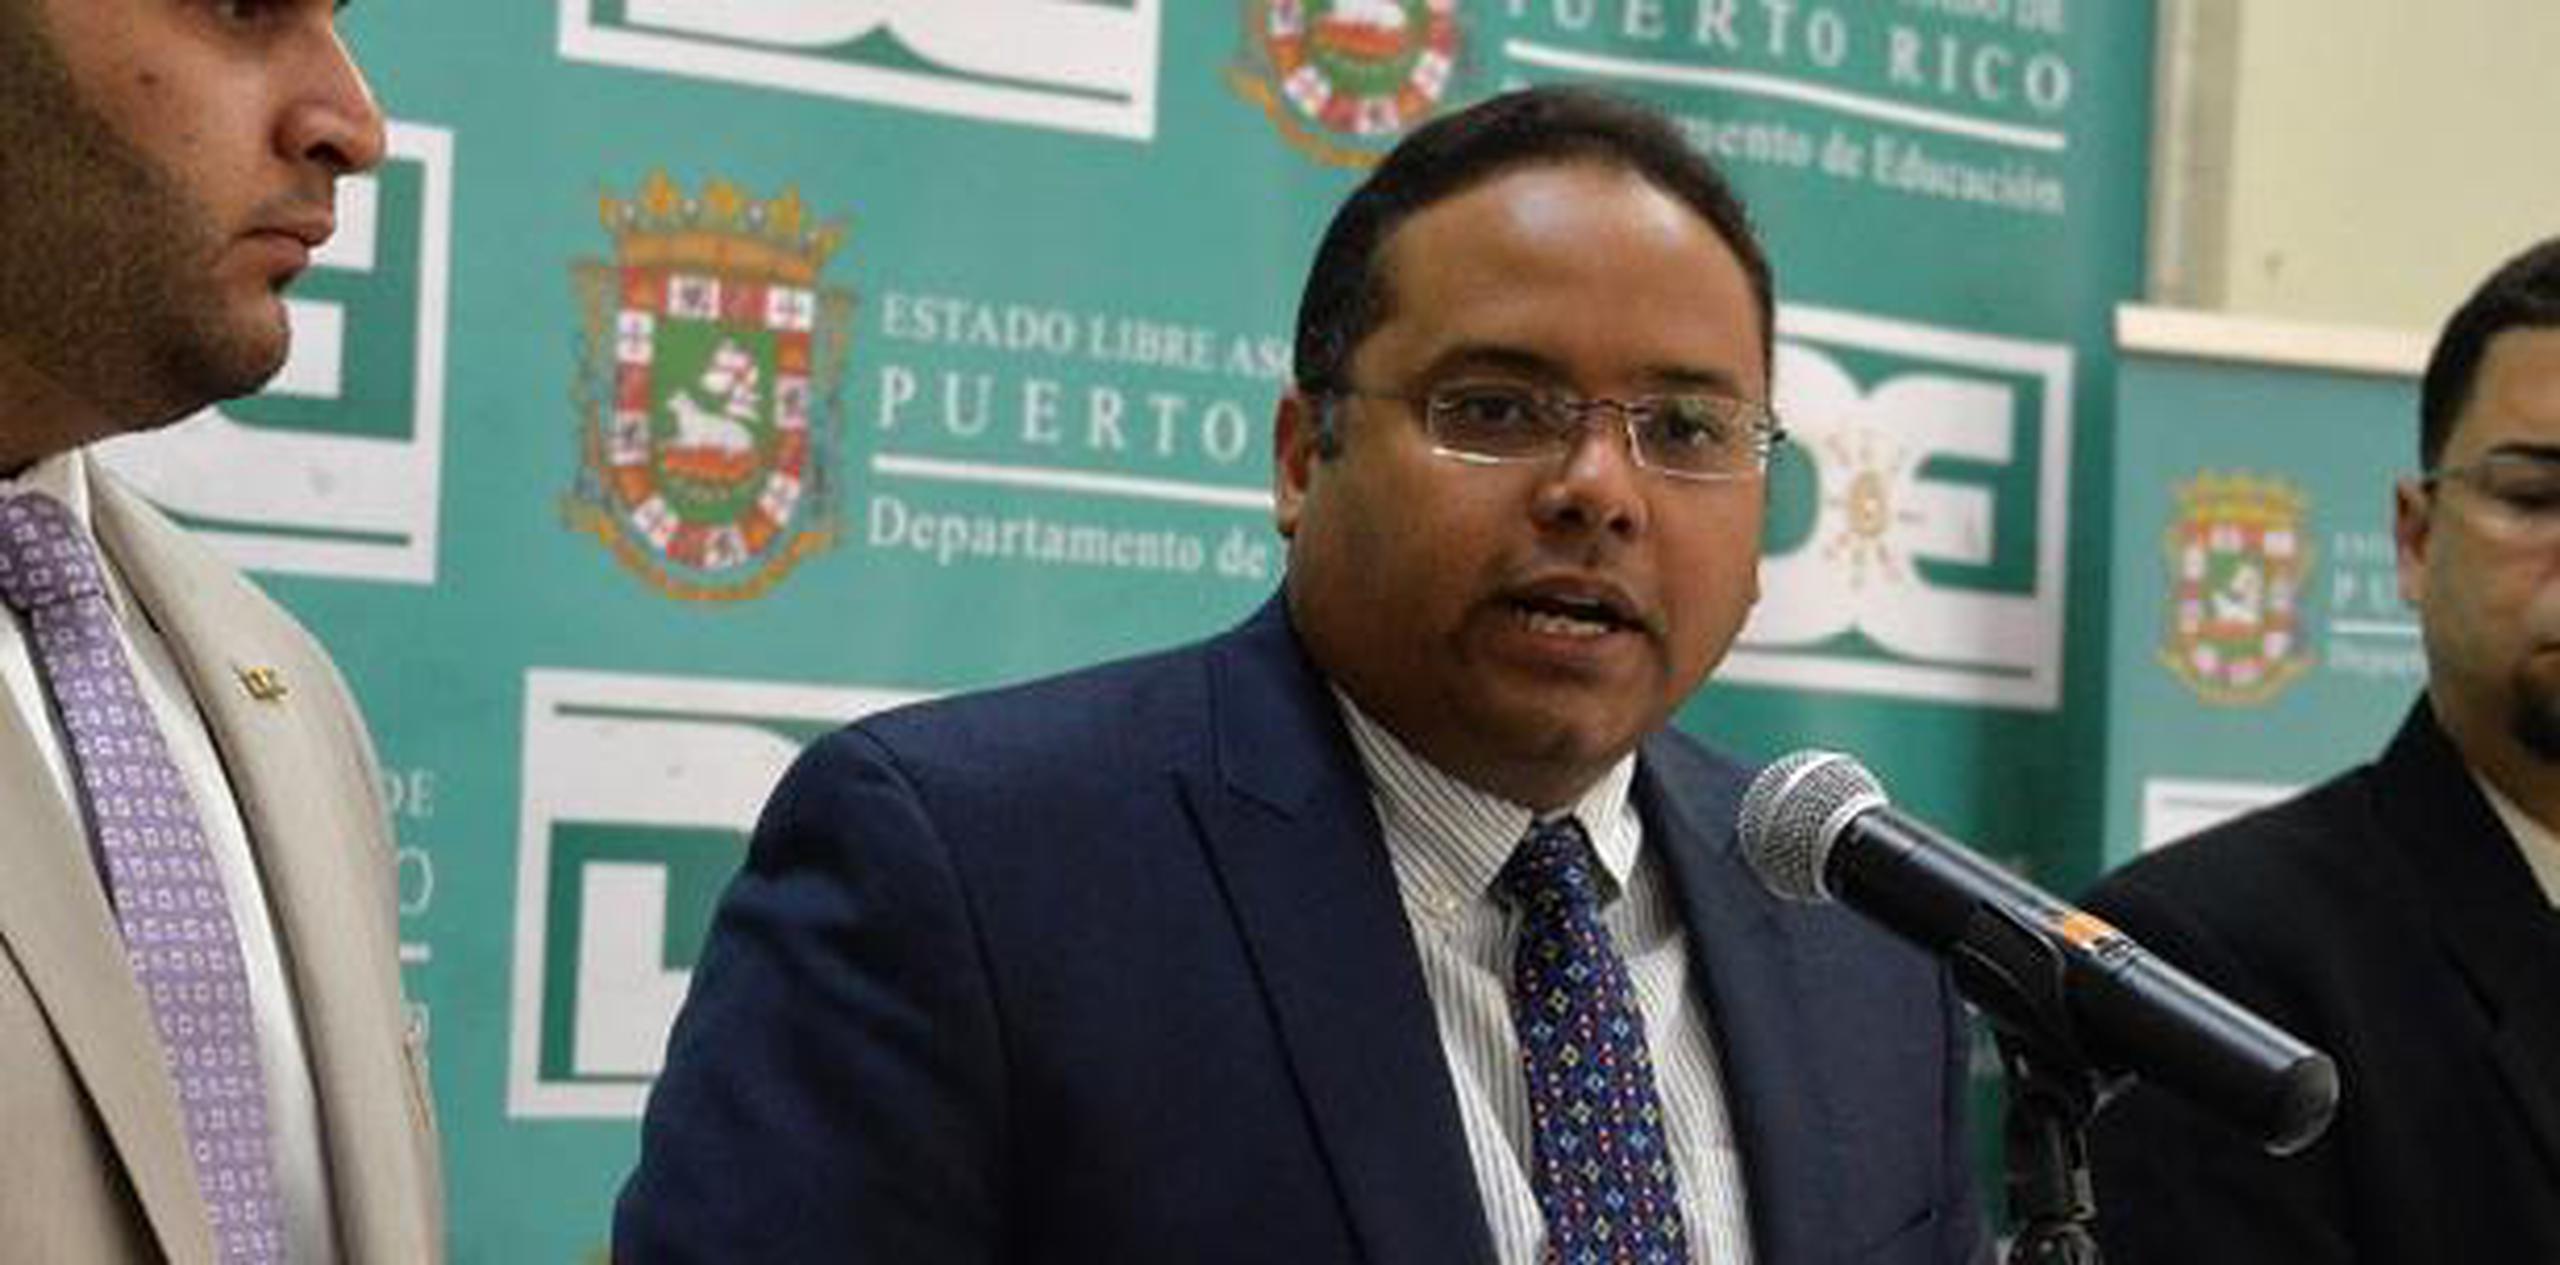 El secretario de Educación Rafael Román también se expresó sobre el tema en Twitter. “Totalmente inaceptable y contrario a la política pública”, escribió. (Archivo)